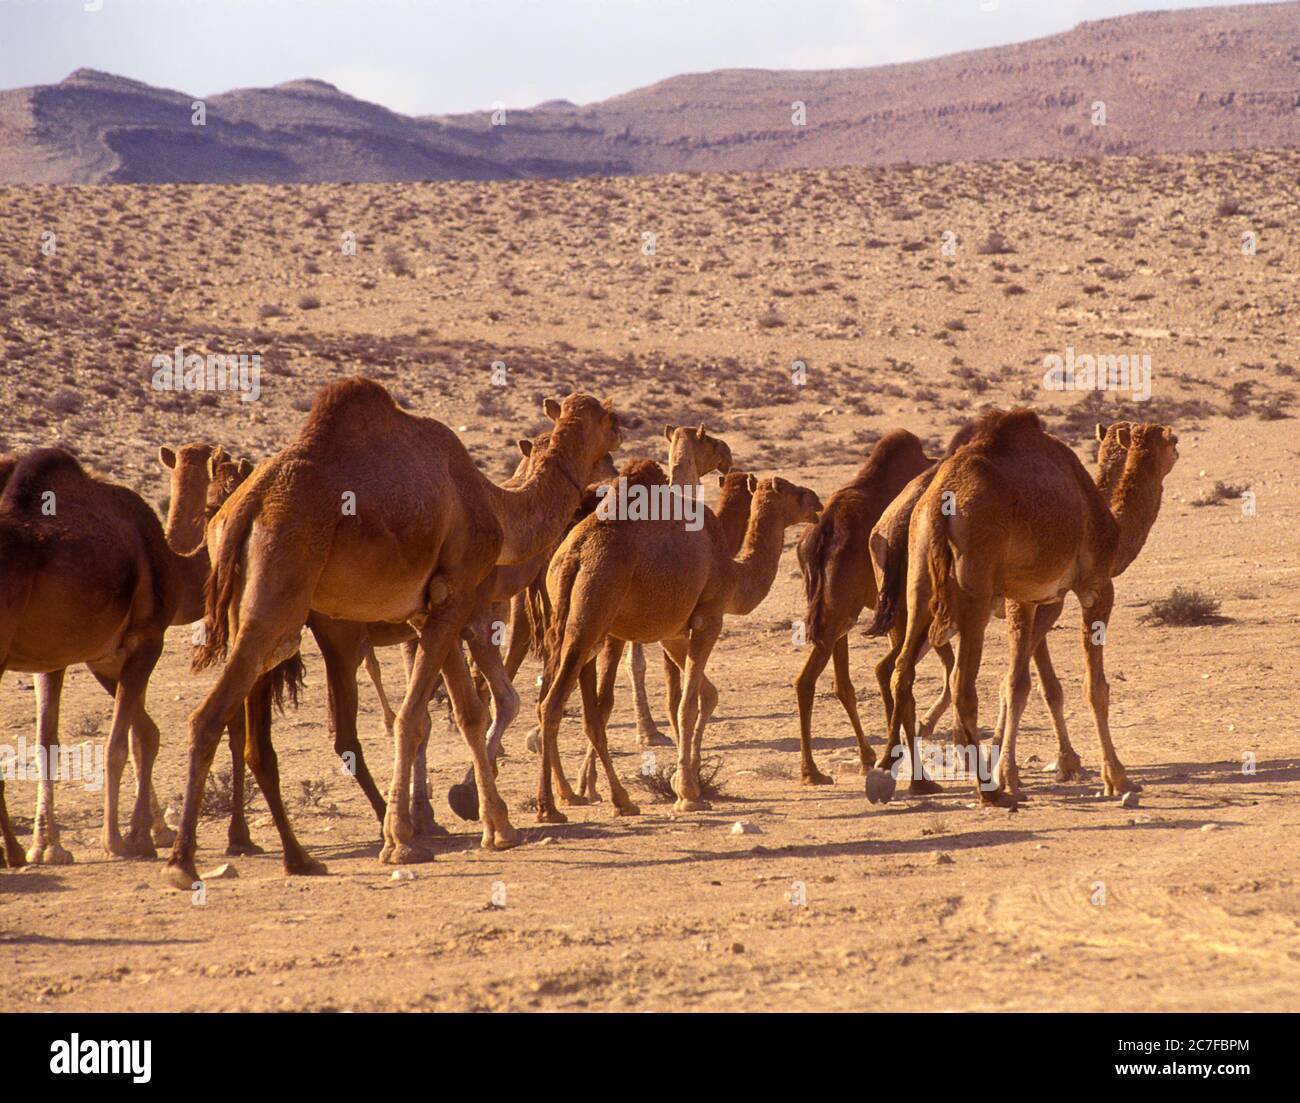 Un troupeau de dromadaires ou de chameaux arabes (Camelus dromedarius) marchant dans le désert. Photographié dans le désert du Néguev, Israël Banque D'Images